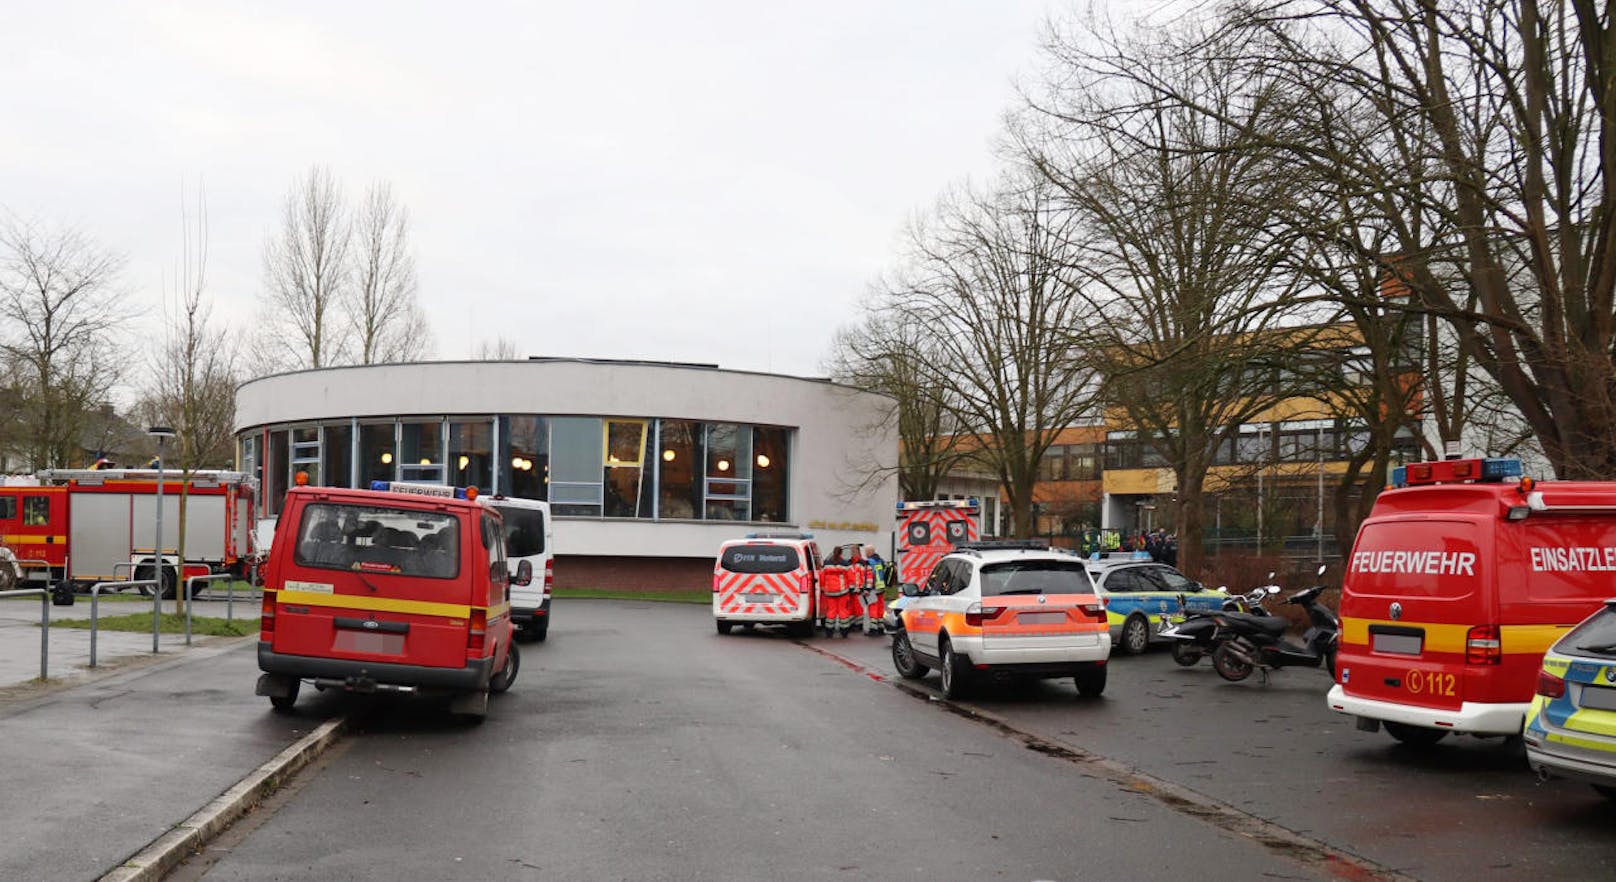 Der 15-jährige Tatverdächtige wurde festgenommen. Die Tat hat sich laut Polizei an der Käthe-Kollwitz-Gesamtschule kurz nach 8 Uhr am Dienstag abgespielt.